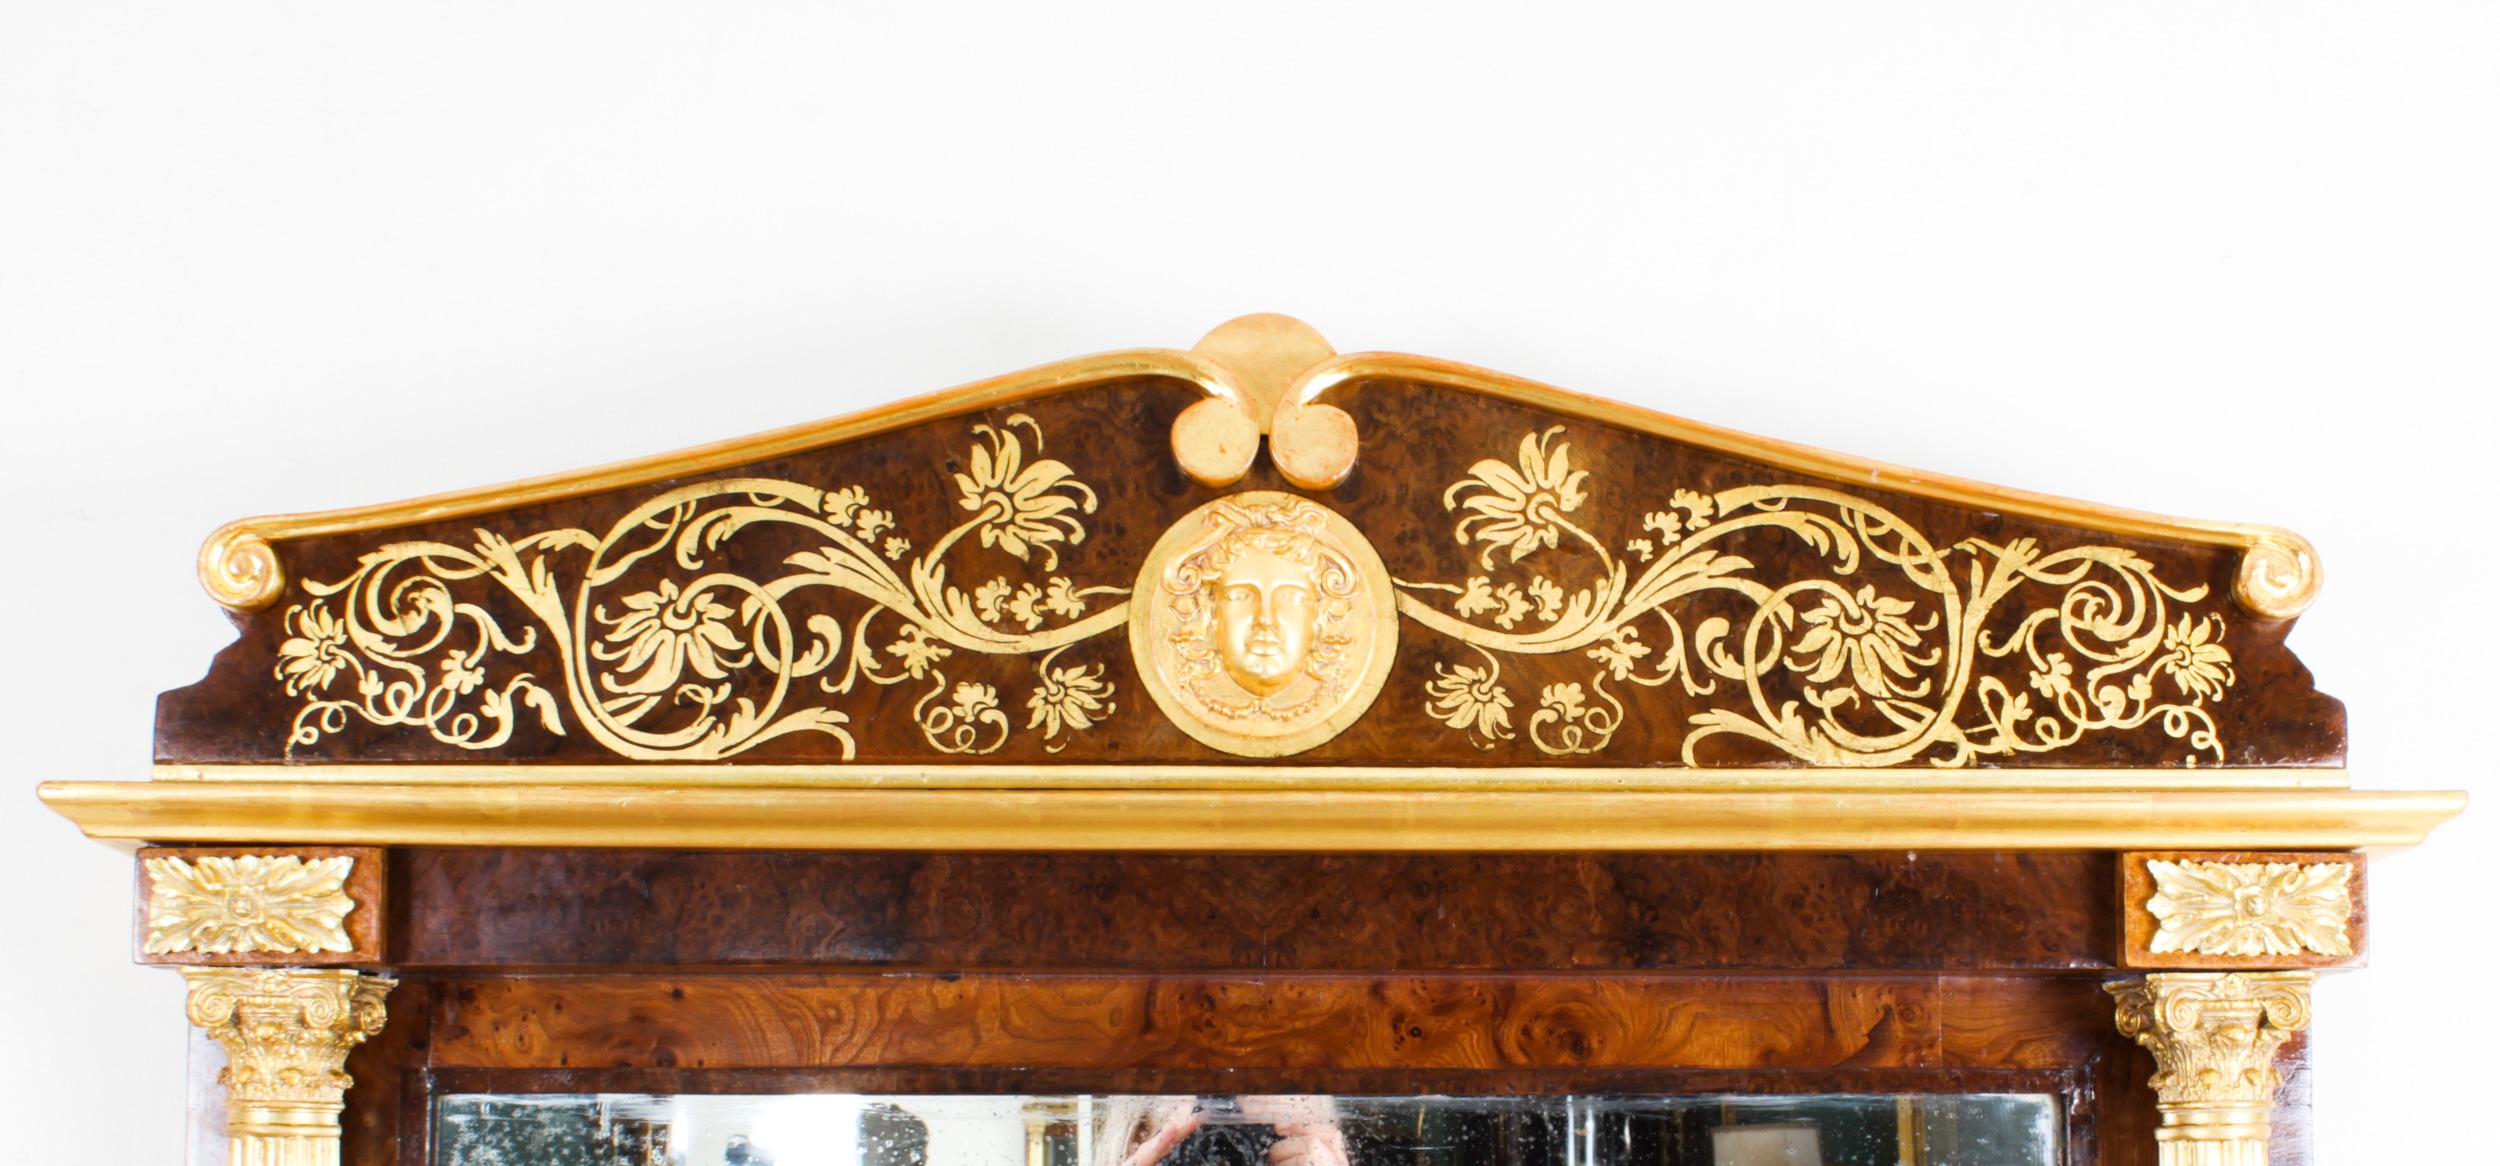 Un beau miroir français ancien en ronce de noyer et parchemin doré, vers 1880.
 
Le miroir rectangulaire présente une crête façonnée avec un anthemion, un masque central doré et d'autres ornements floraux et feuillagés dorés.
 
Il est doté de sa